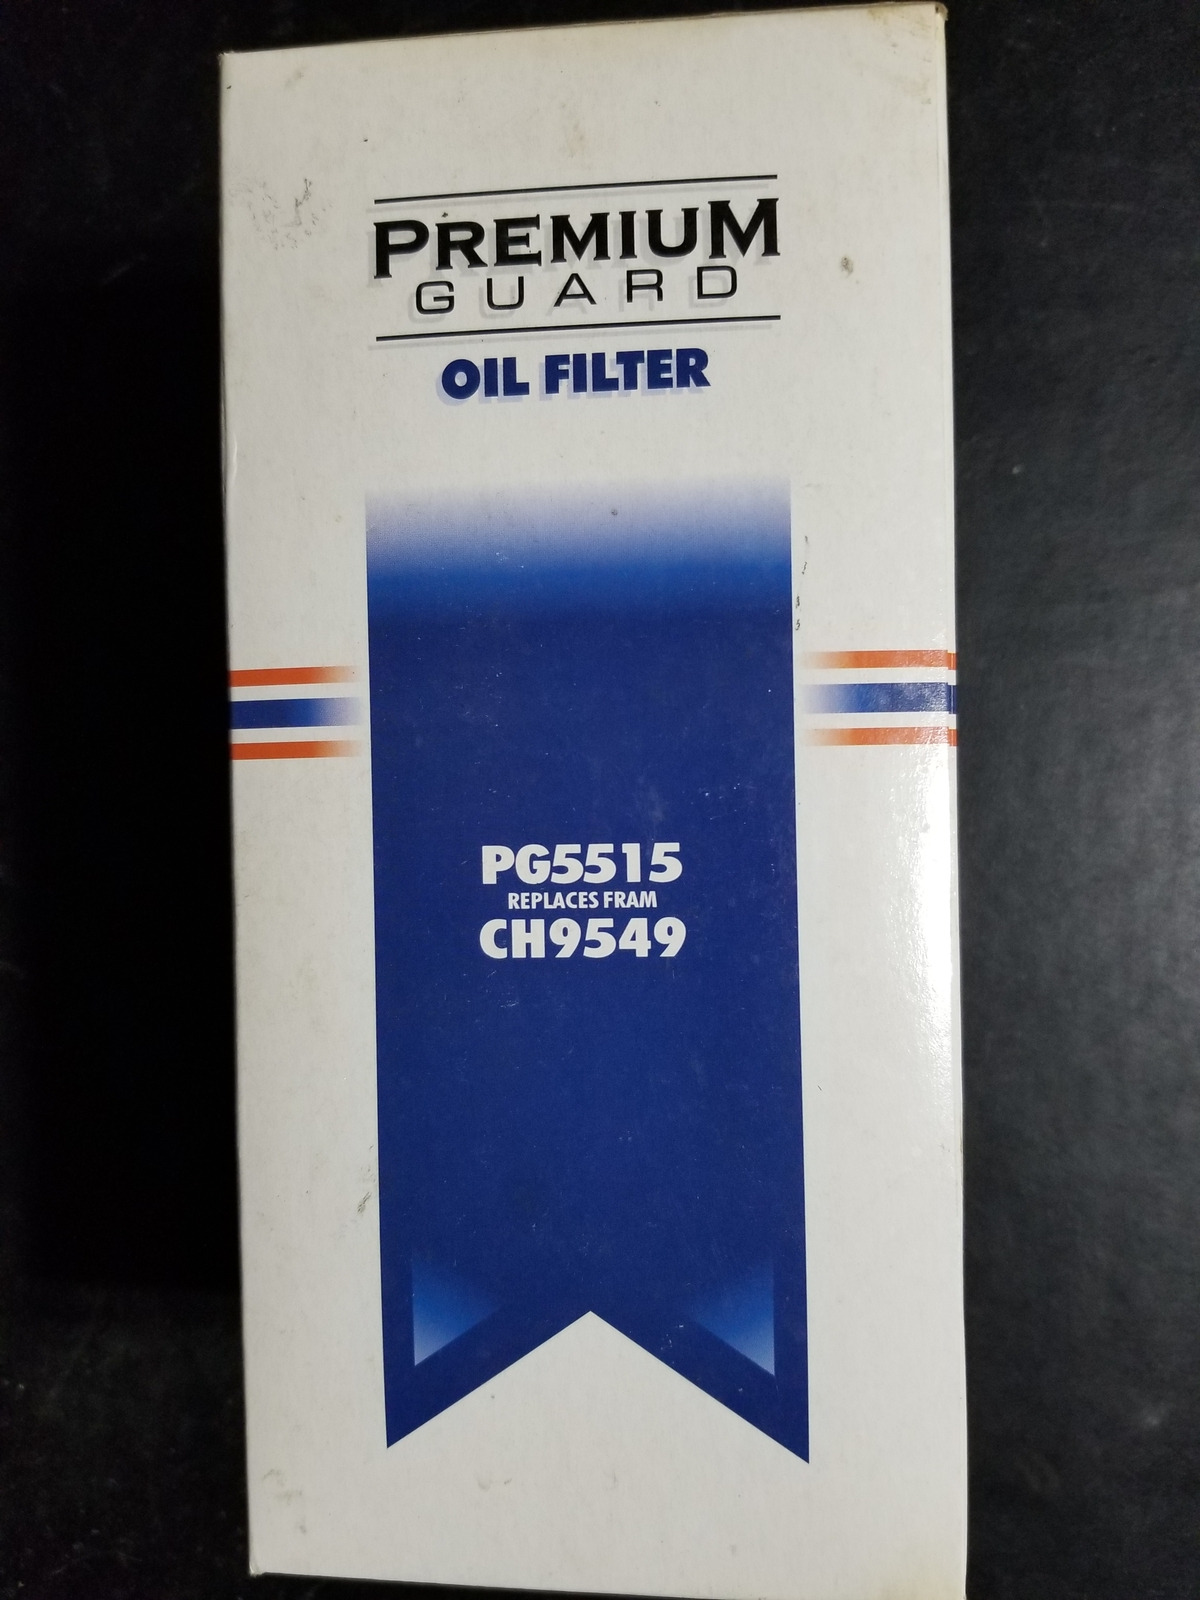 PREMIUM GUARD Lot of 3pcs Oil Filter Part# PG5515 - NEW